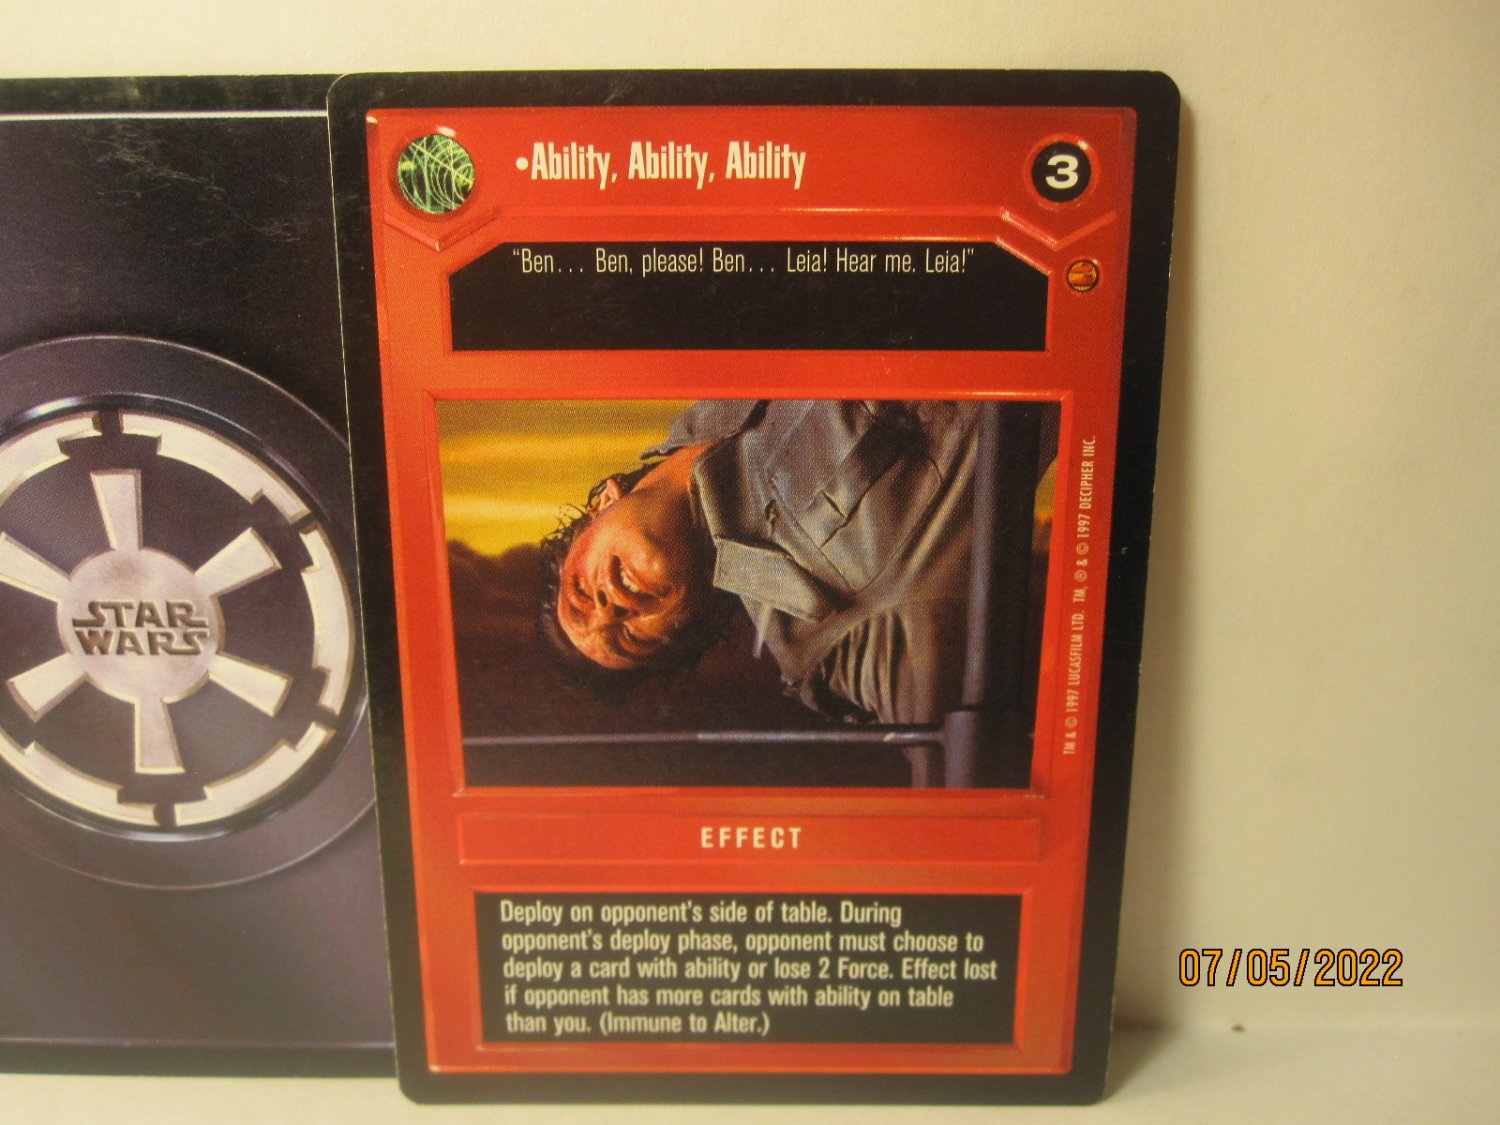 1997 Star Wars CCG Card: Ability, Ability, Ability - black border